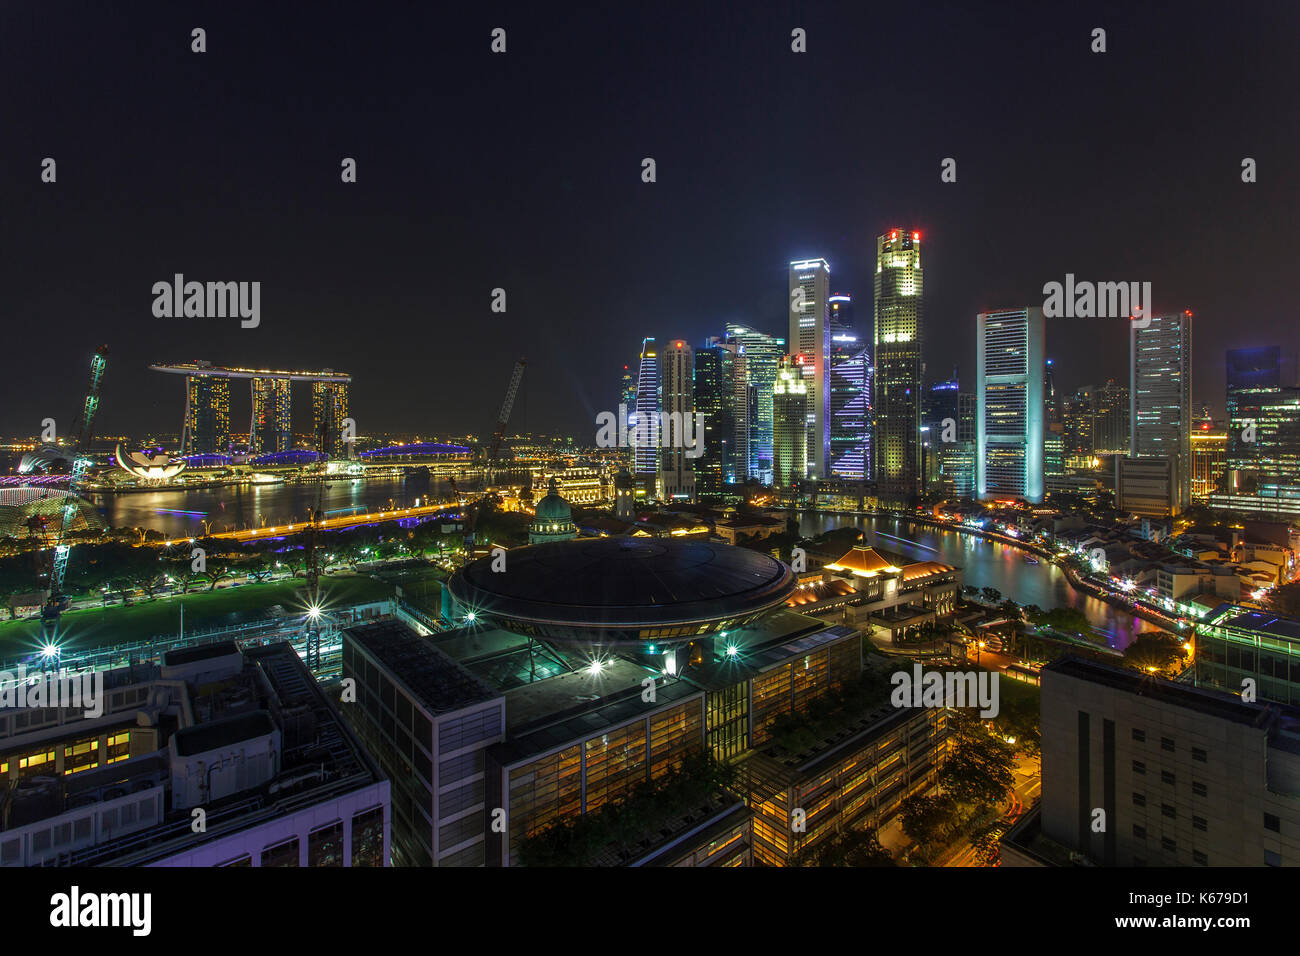 City skyline at night, Singapore Stock Photo